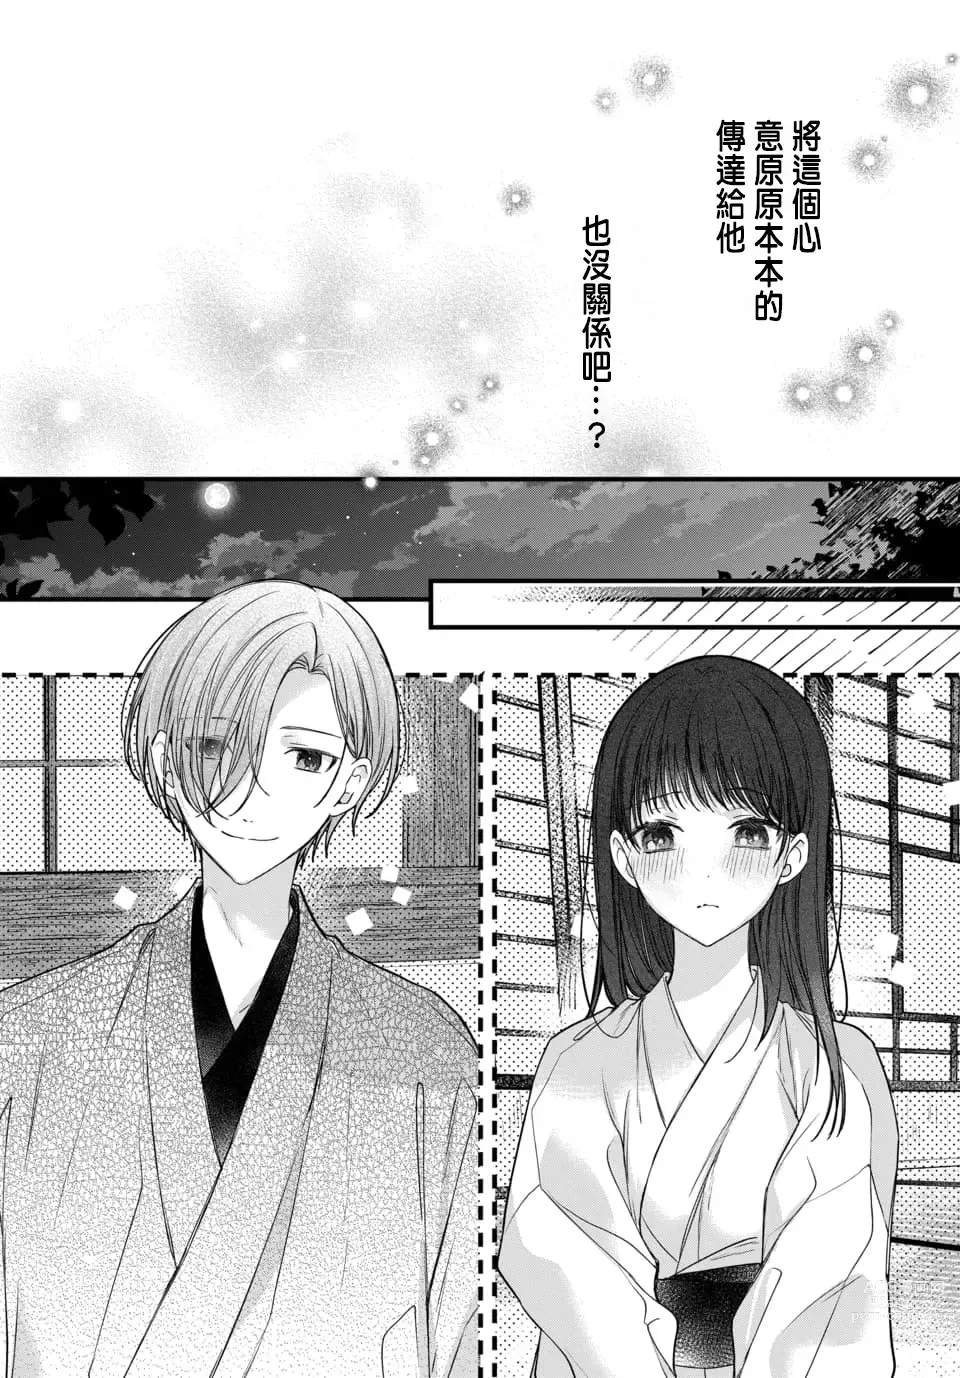 Page 227 of manga Tsuki e no Yomeiri 1-6